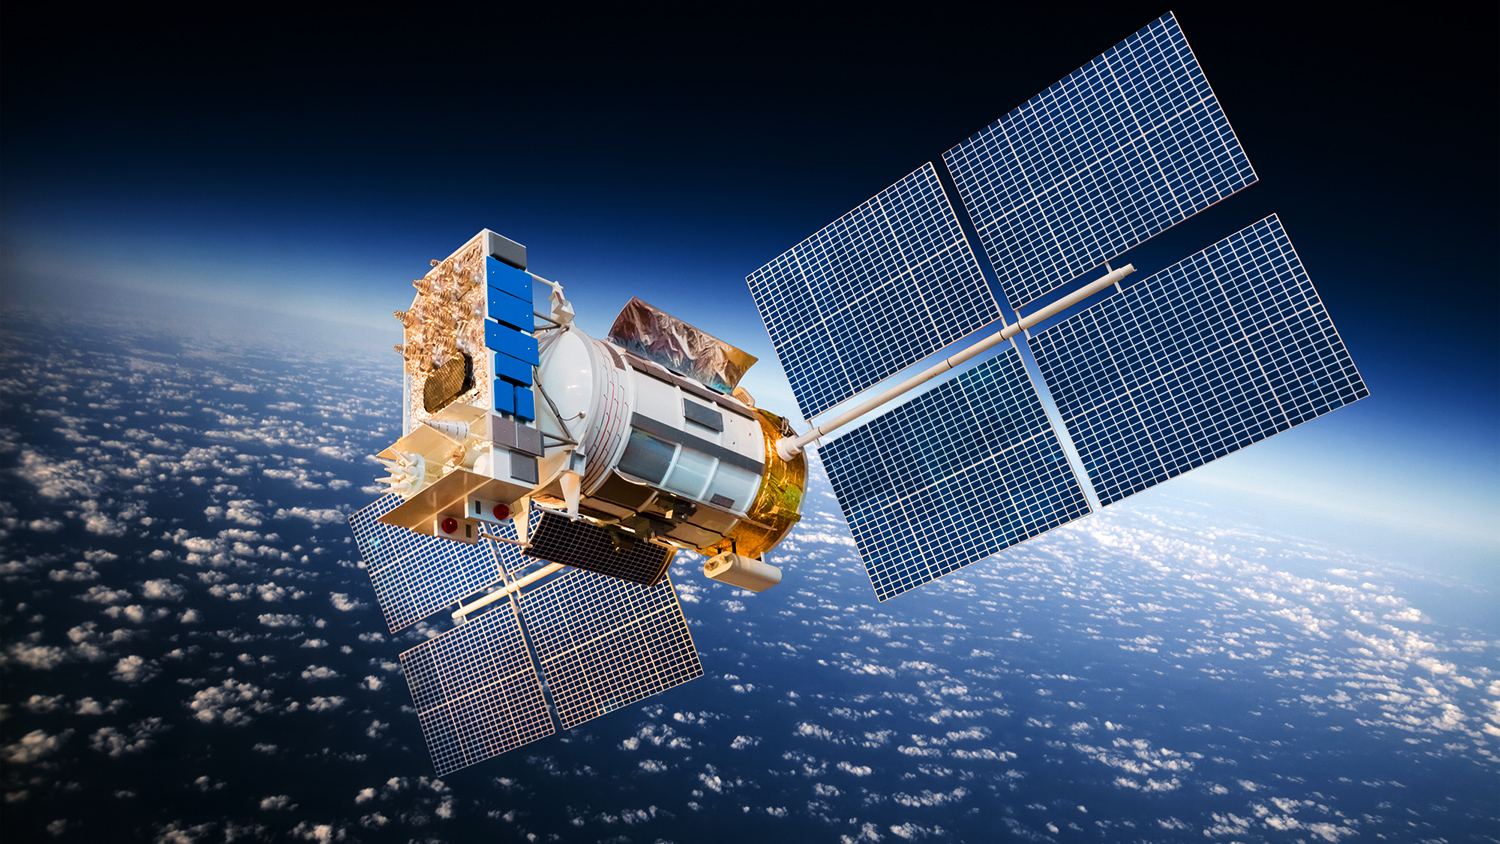 Бельгийская SatADSL посредством спутников Азербайджана обеспечит связью регионы Восточной Европы и России